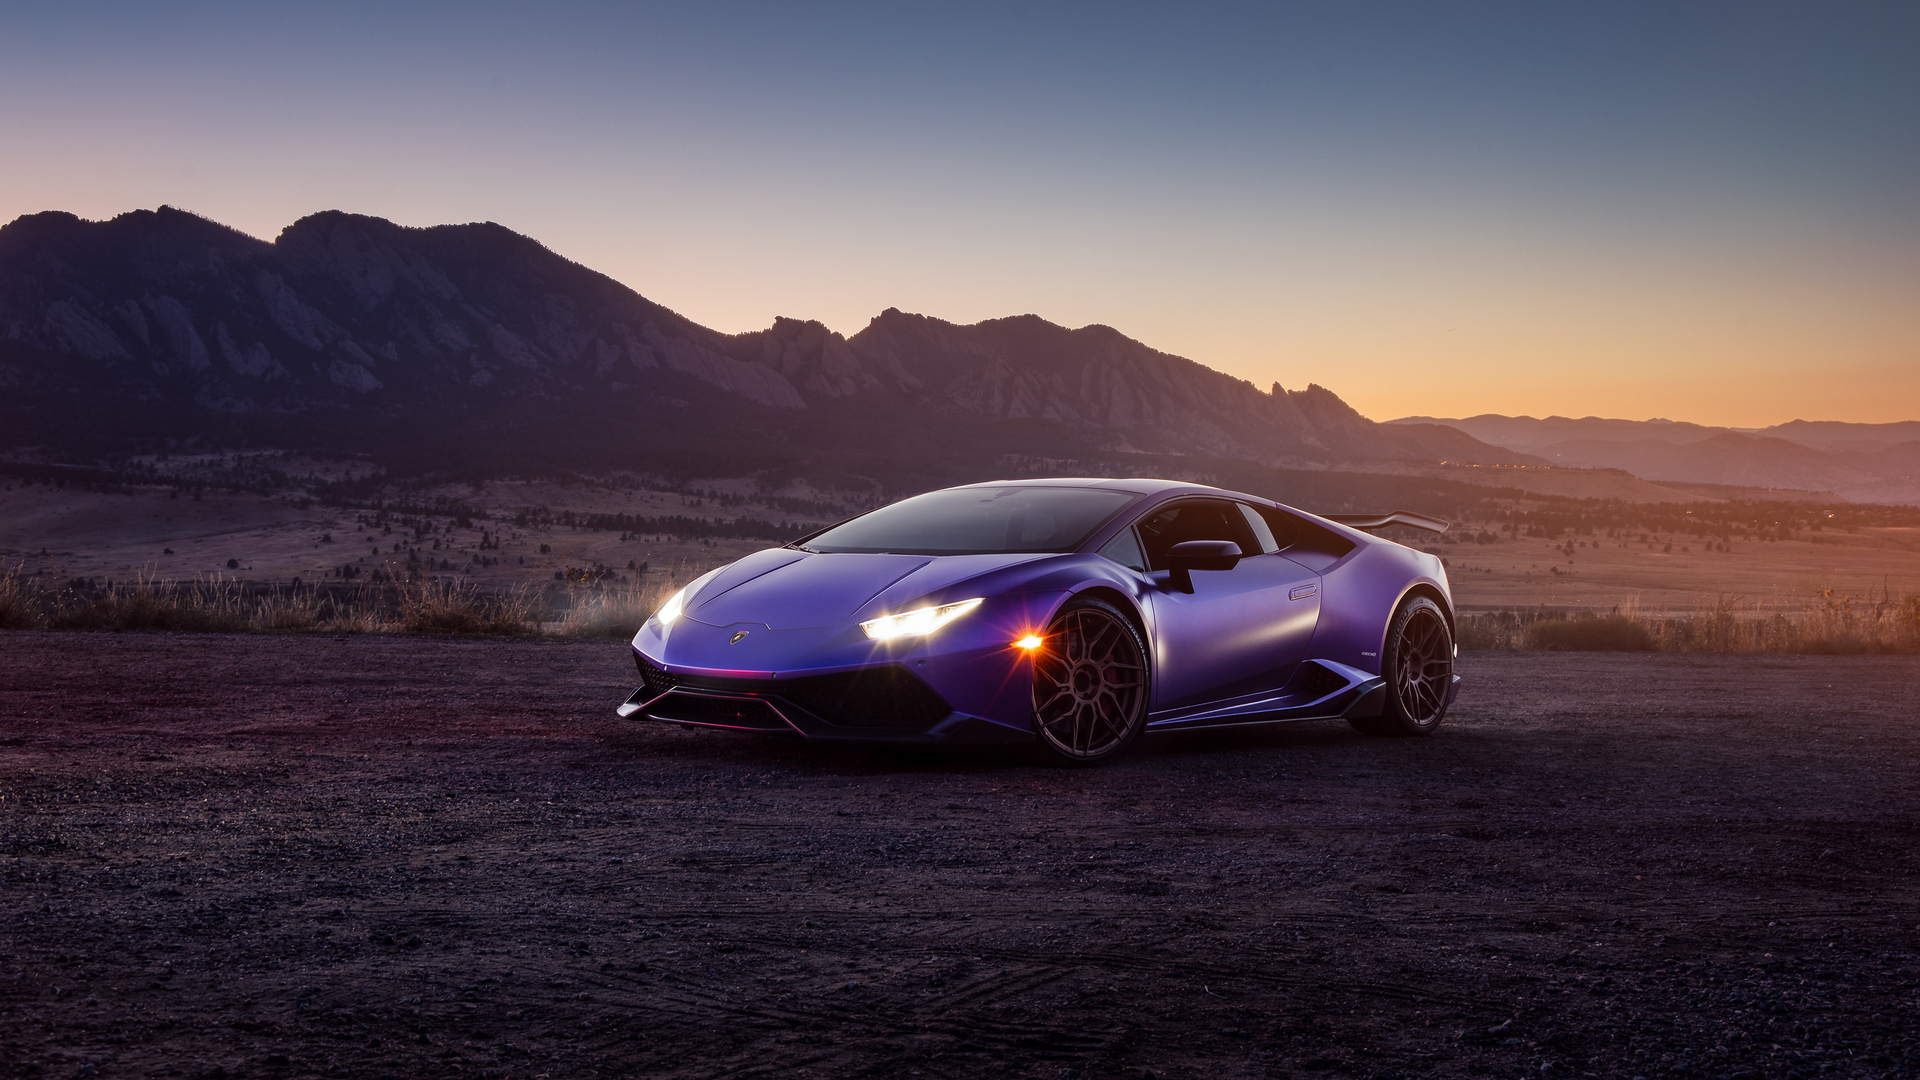 Bạn mong muốn một màn hình đẹp và đầy cá tính? Hãy lựa chọn hình nền Lamborghini màu tím, với sự kết hợp hoàn hảo giữa sự sang trọng và độc đáo. Wallpaper này sẽ chuyển đổi hoàn toàn màn hình của bạn và đem lại cảm giác khác thường. Sự tinh tế của nghệ thuật thiết kế của Lamborghini kết hợp với màu sắc nổi bật, giúp bạn thể hiện sự phong cách riêng của mình.